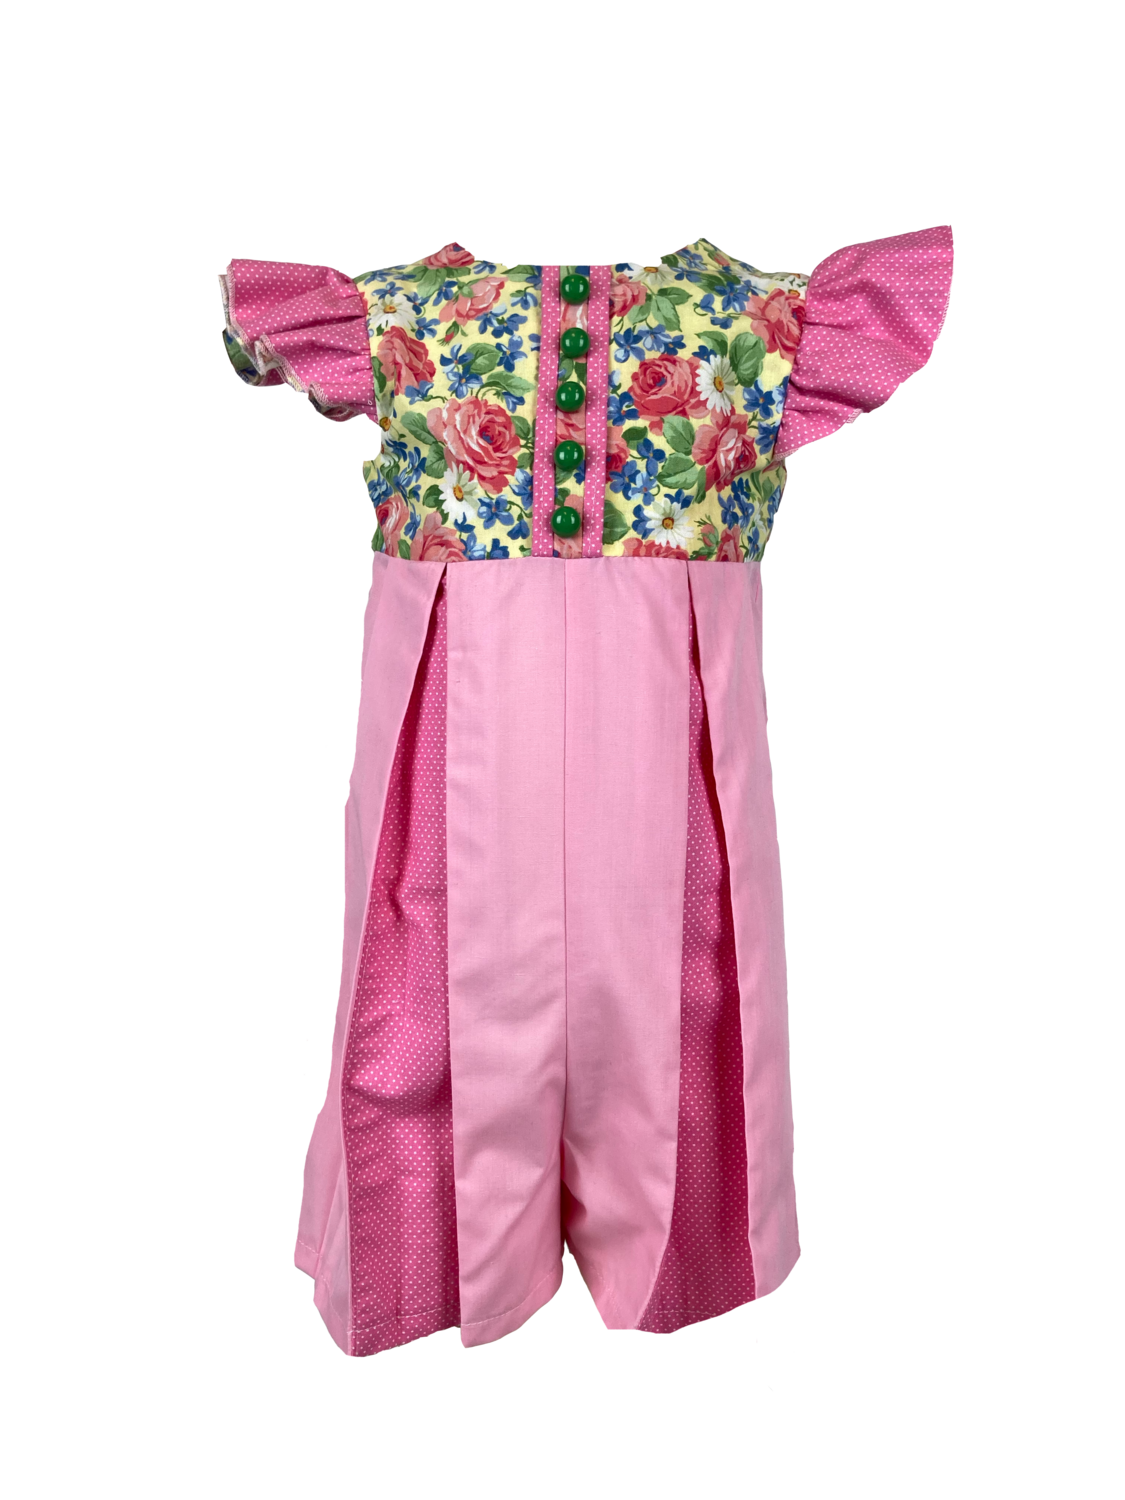 Pink Floral Rose Spring/Summer Dress